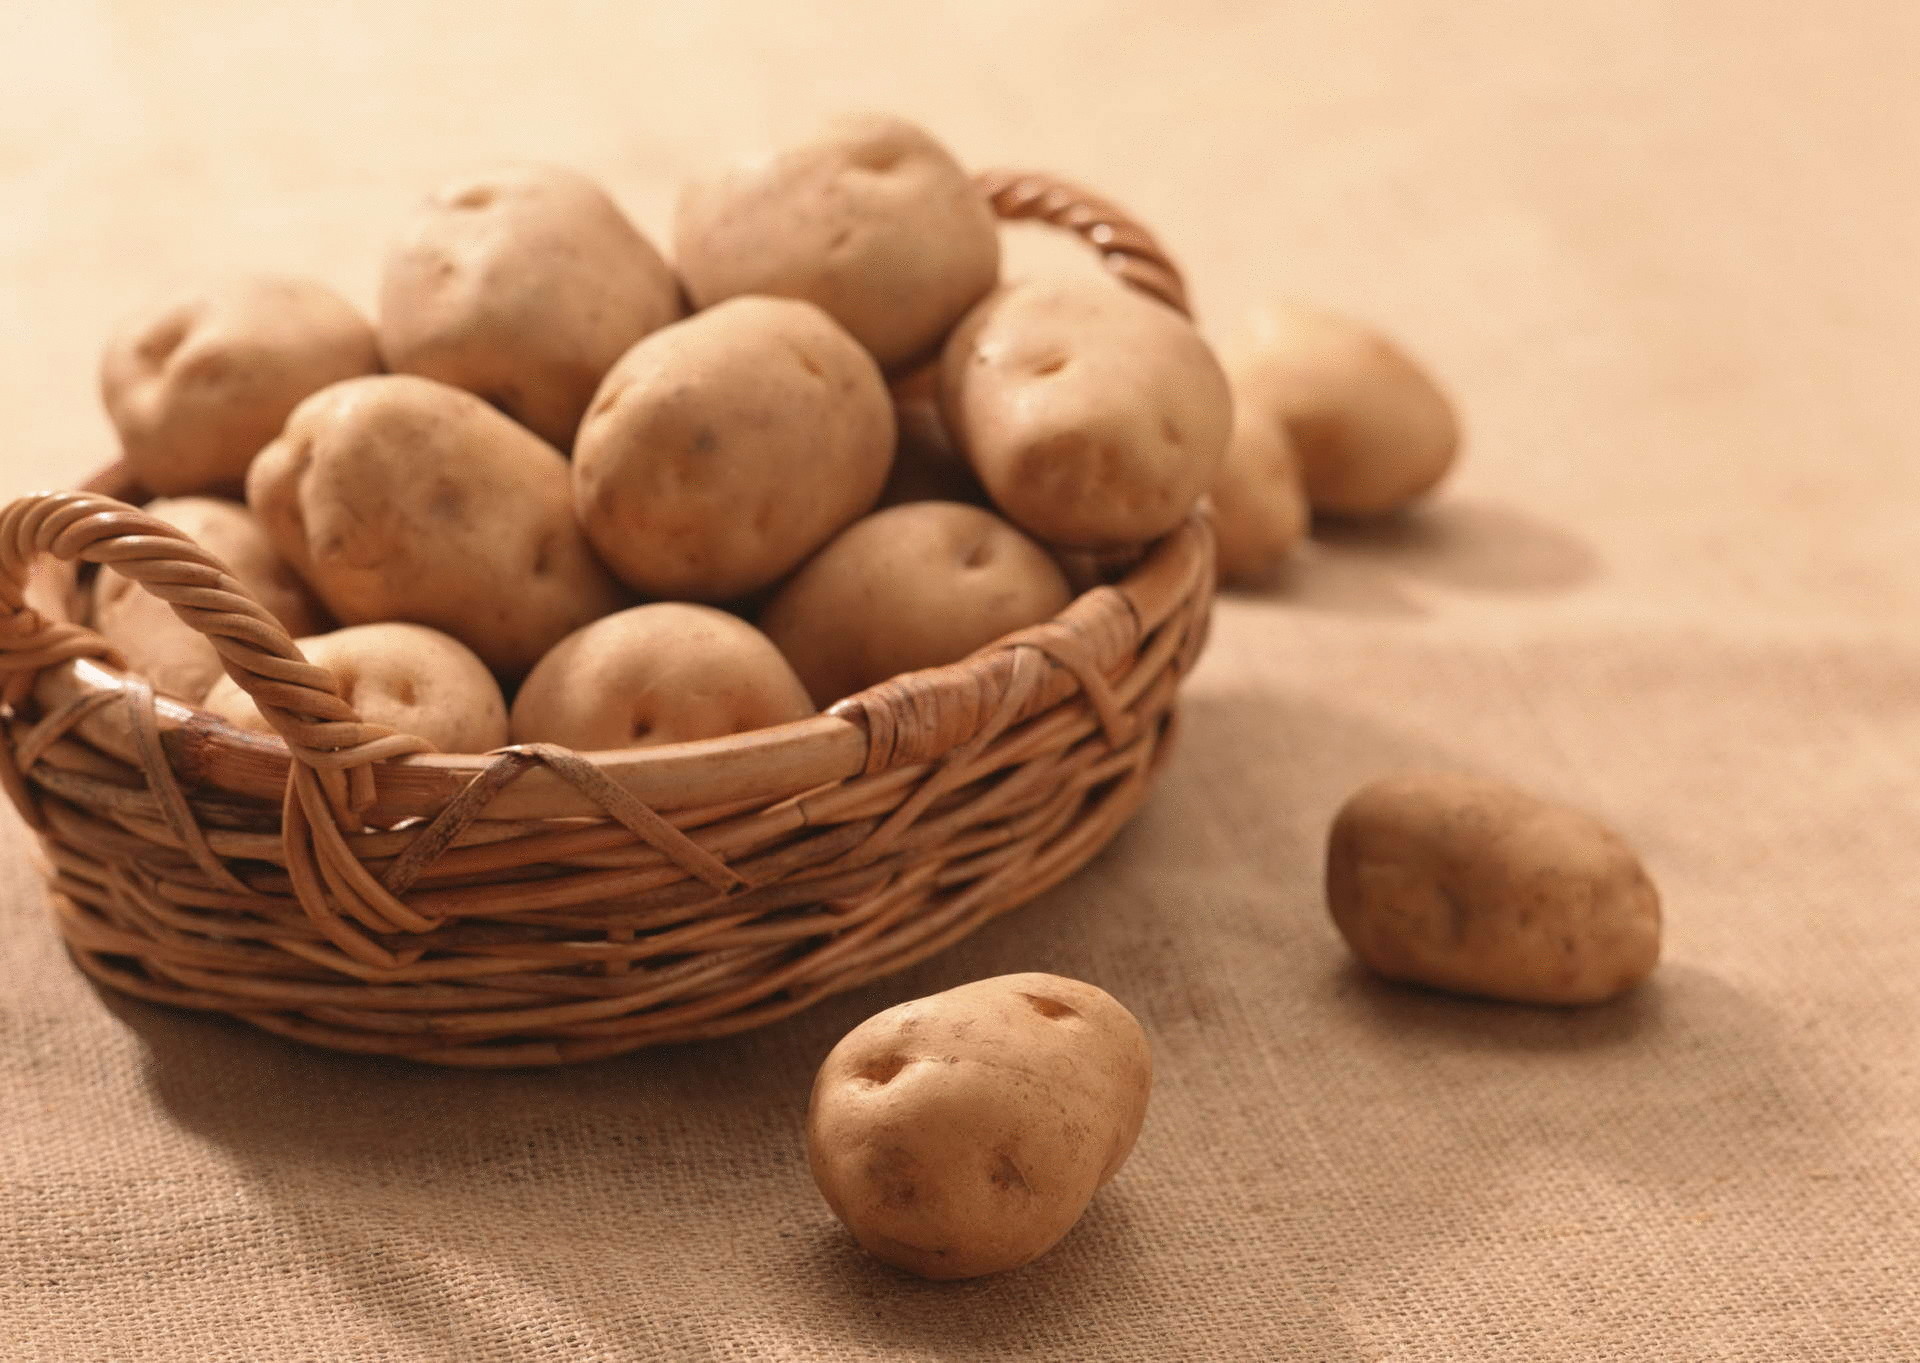  Простые рецепты красоты с картофелем